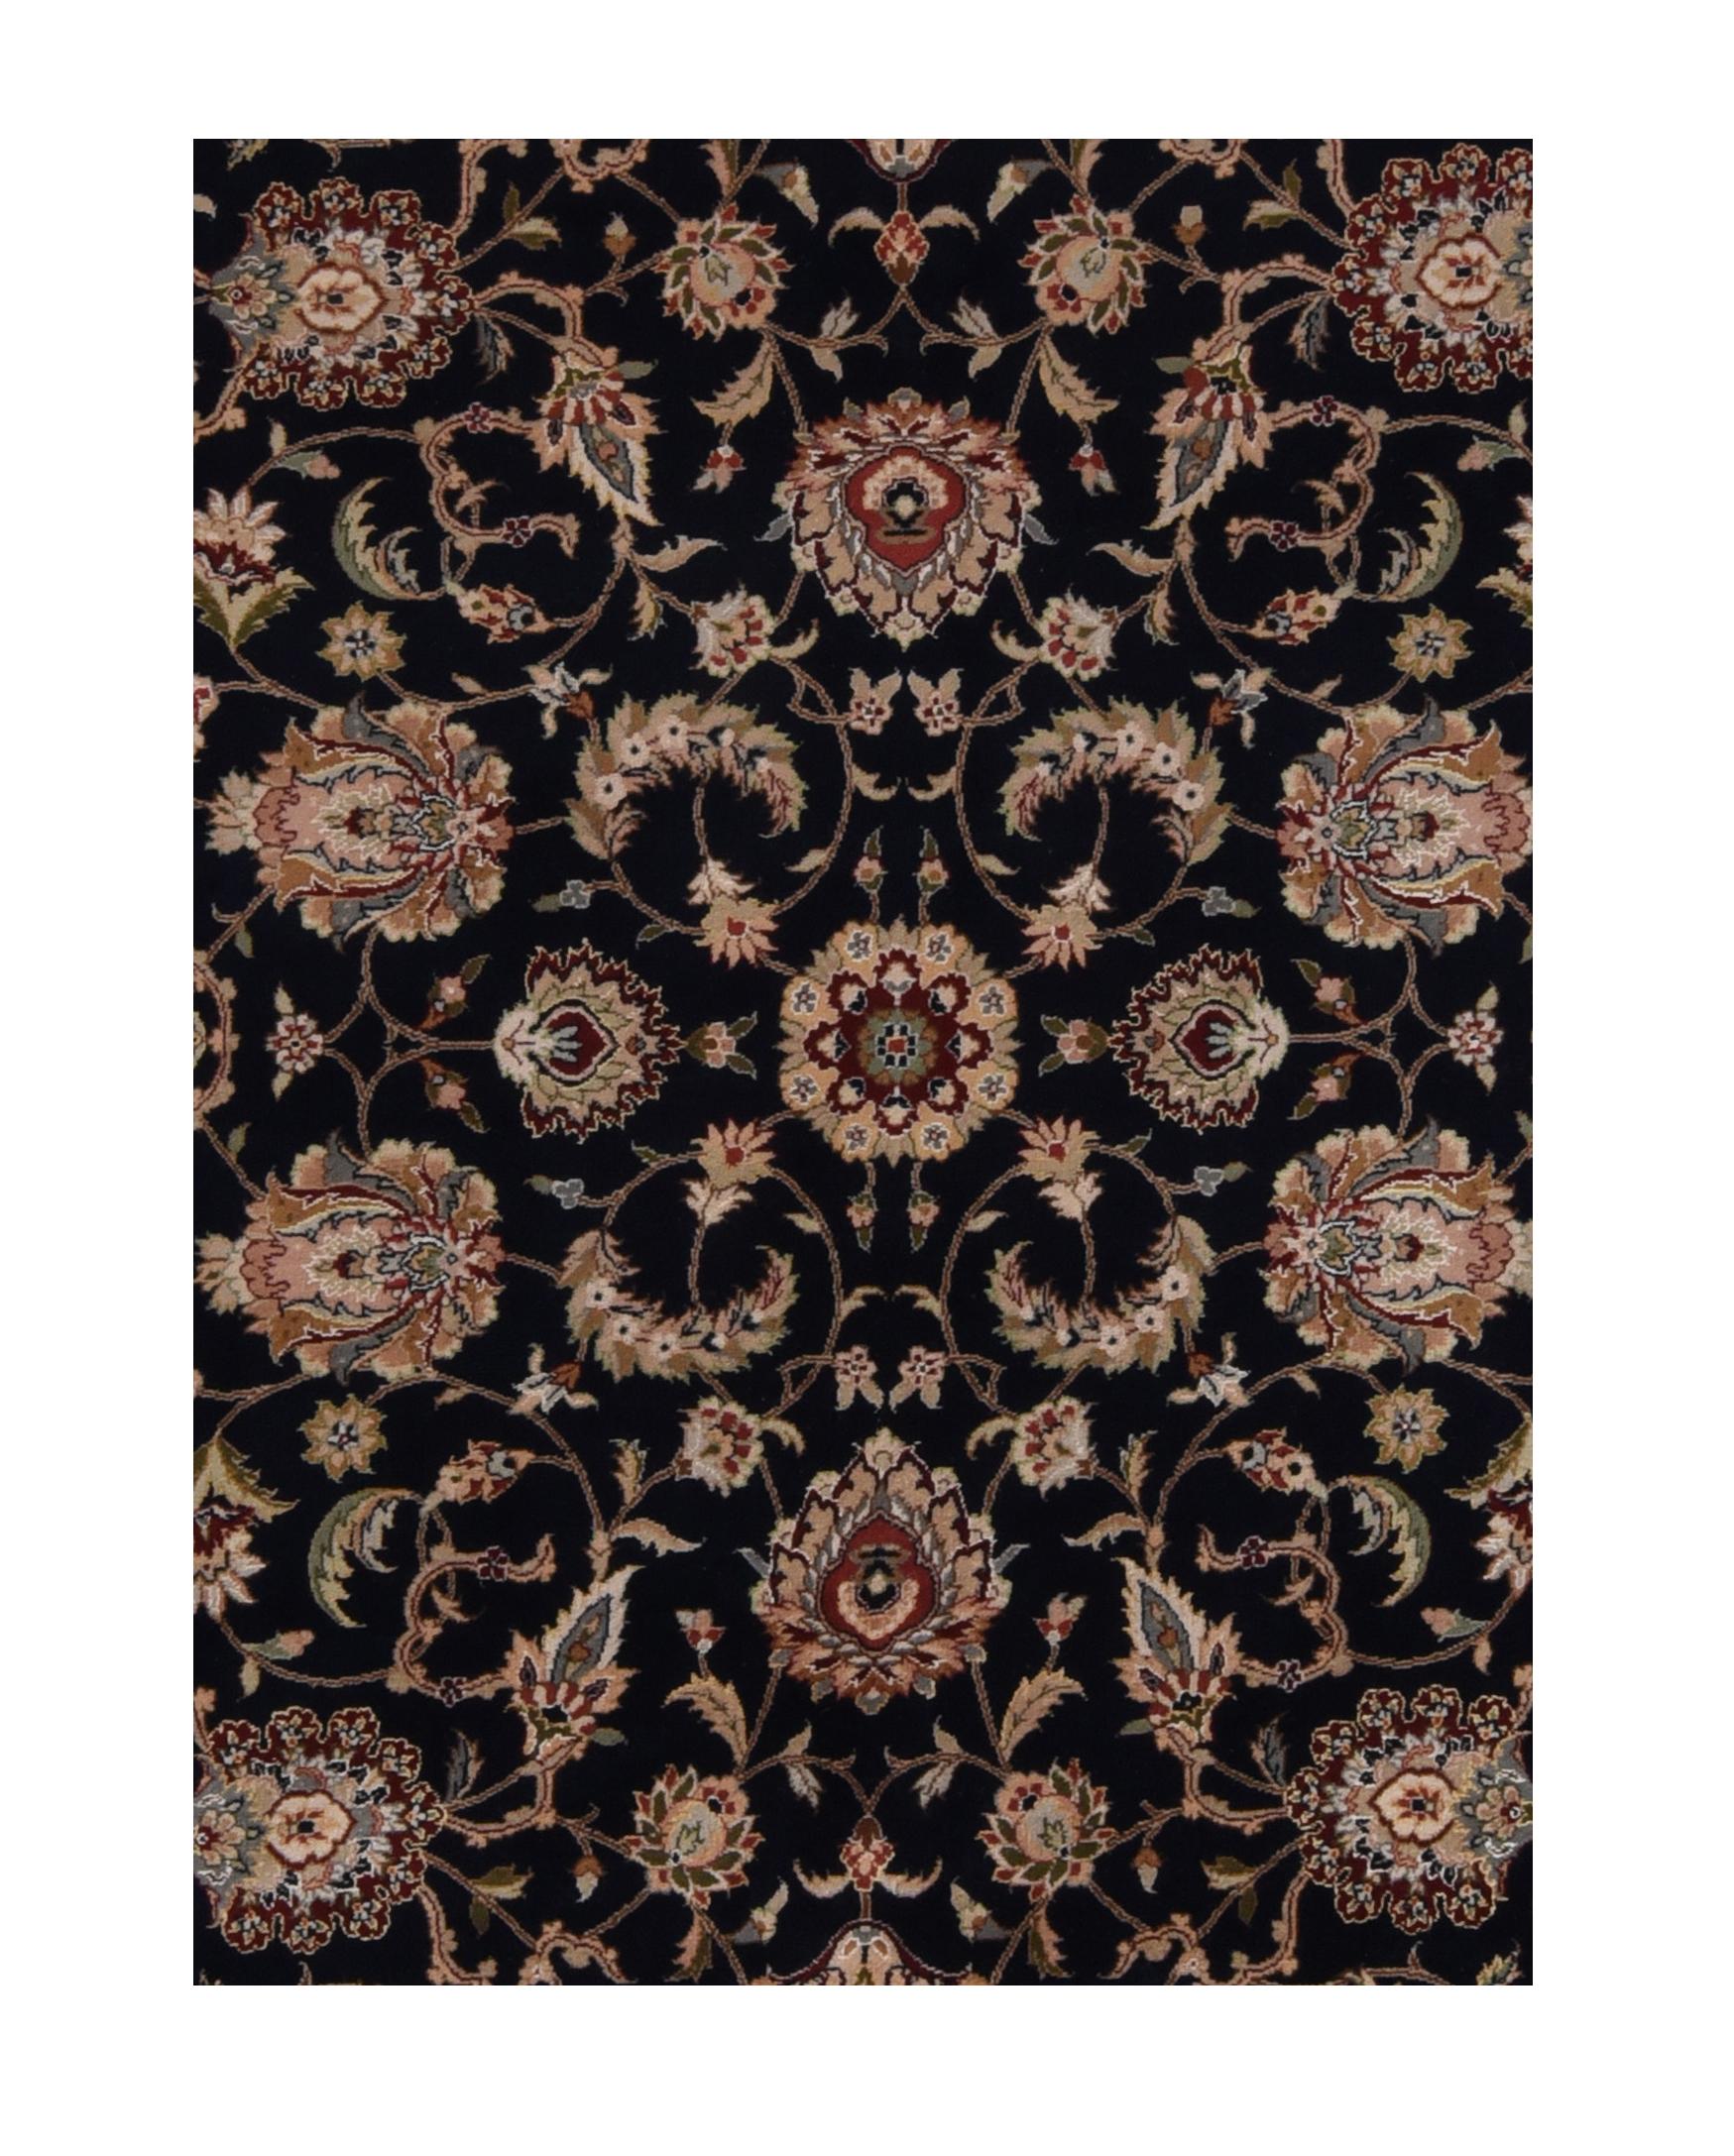 Tapis Persan Tabriz Design, en laine, noué à la main

Design : Floral sur toute la surface

Un tapis pakistanais (Pak Persian Rug ou Pakistani carpet) est un type de textile de revêtement de sol fait à la main et traditionnellement fabriqué au